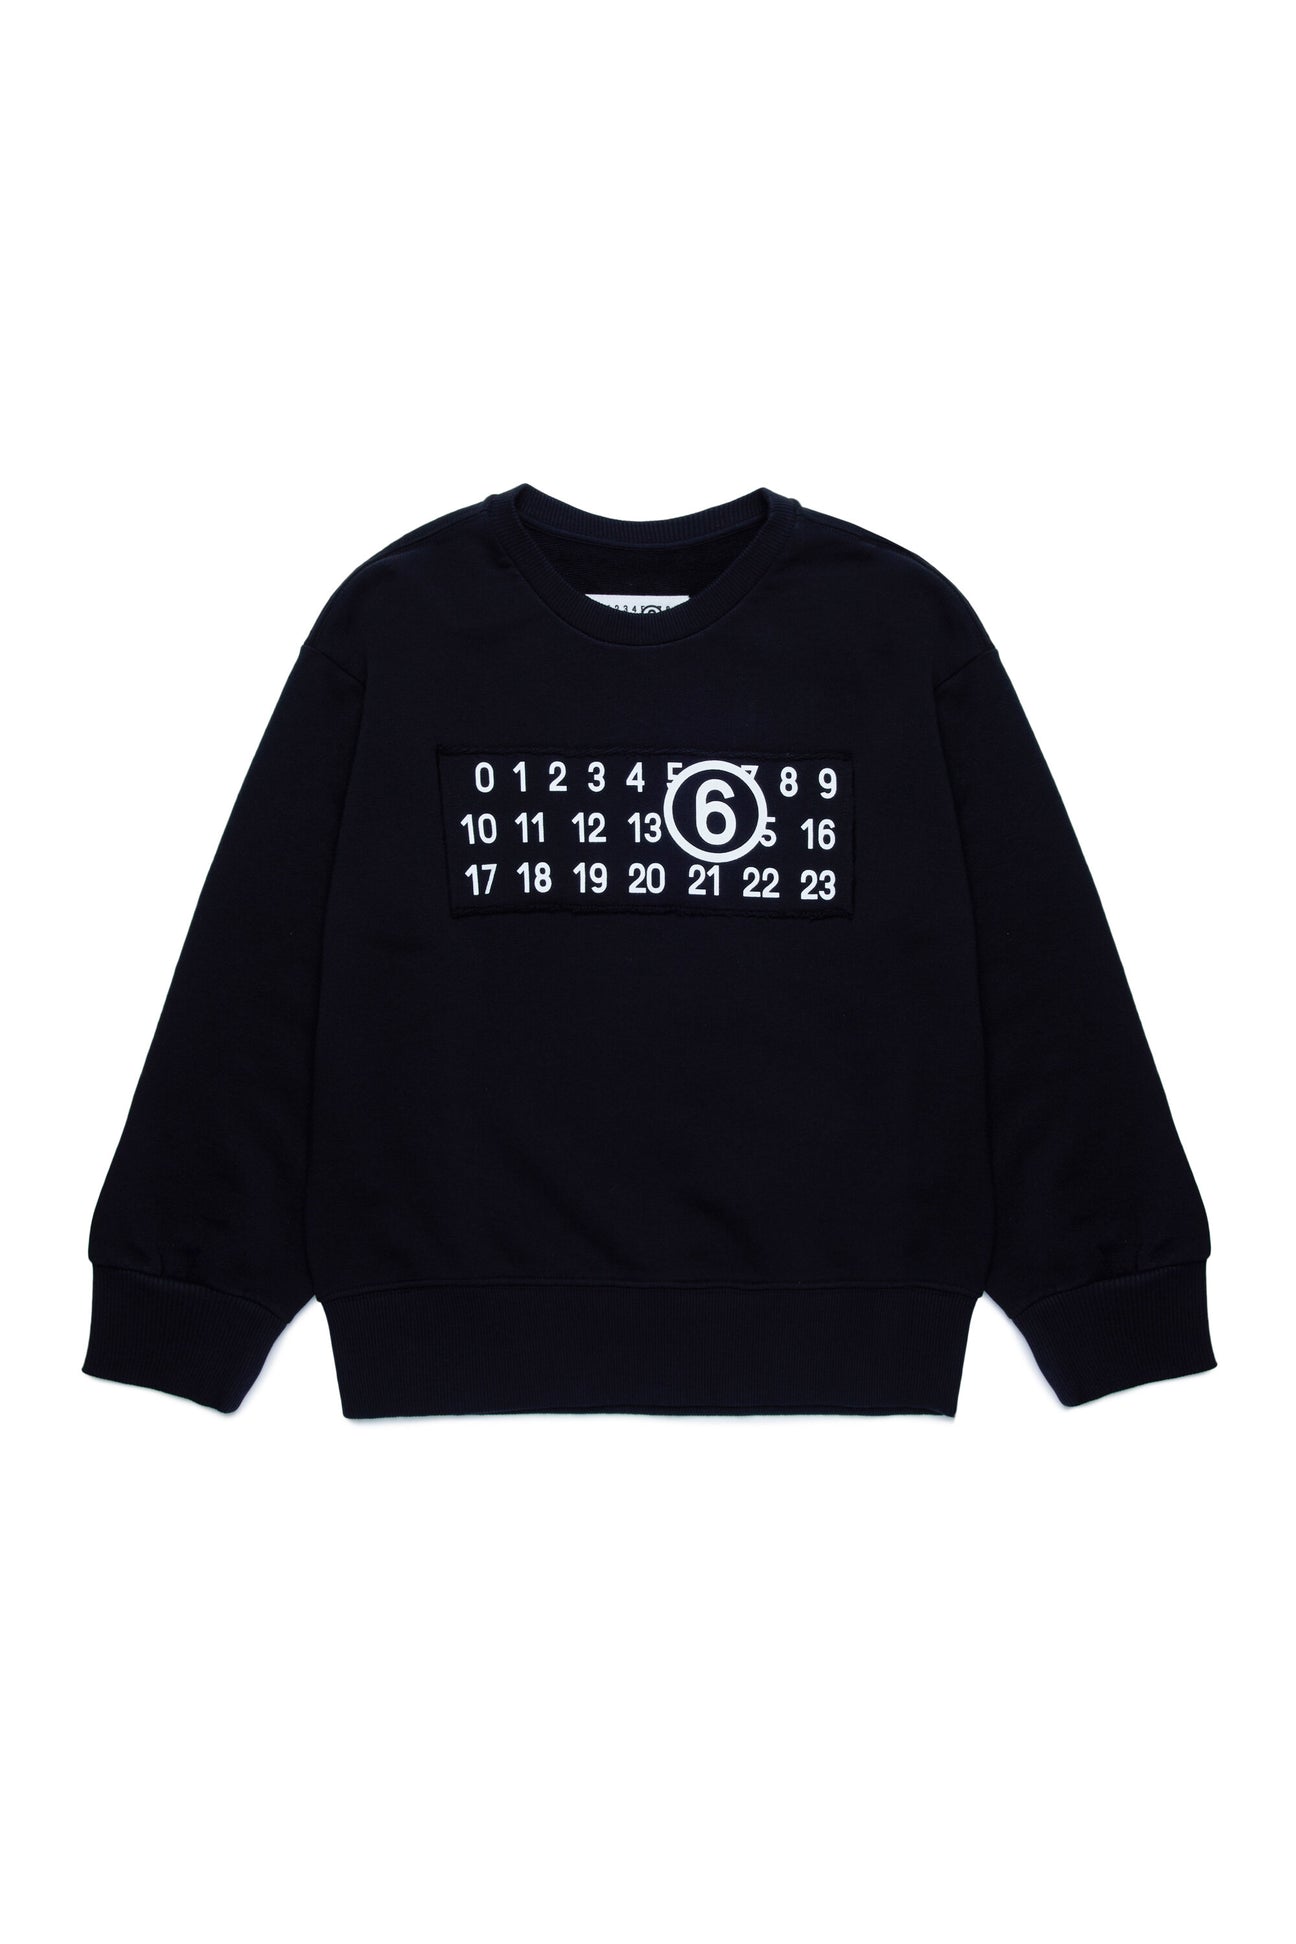 Crew-neck sweatshirt branded with numeric logo Crew-neck sweatshirt branded with numeric logo